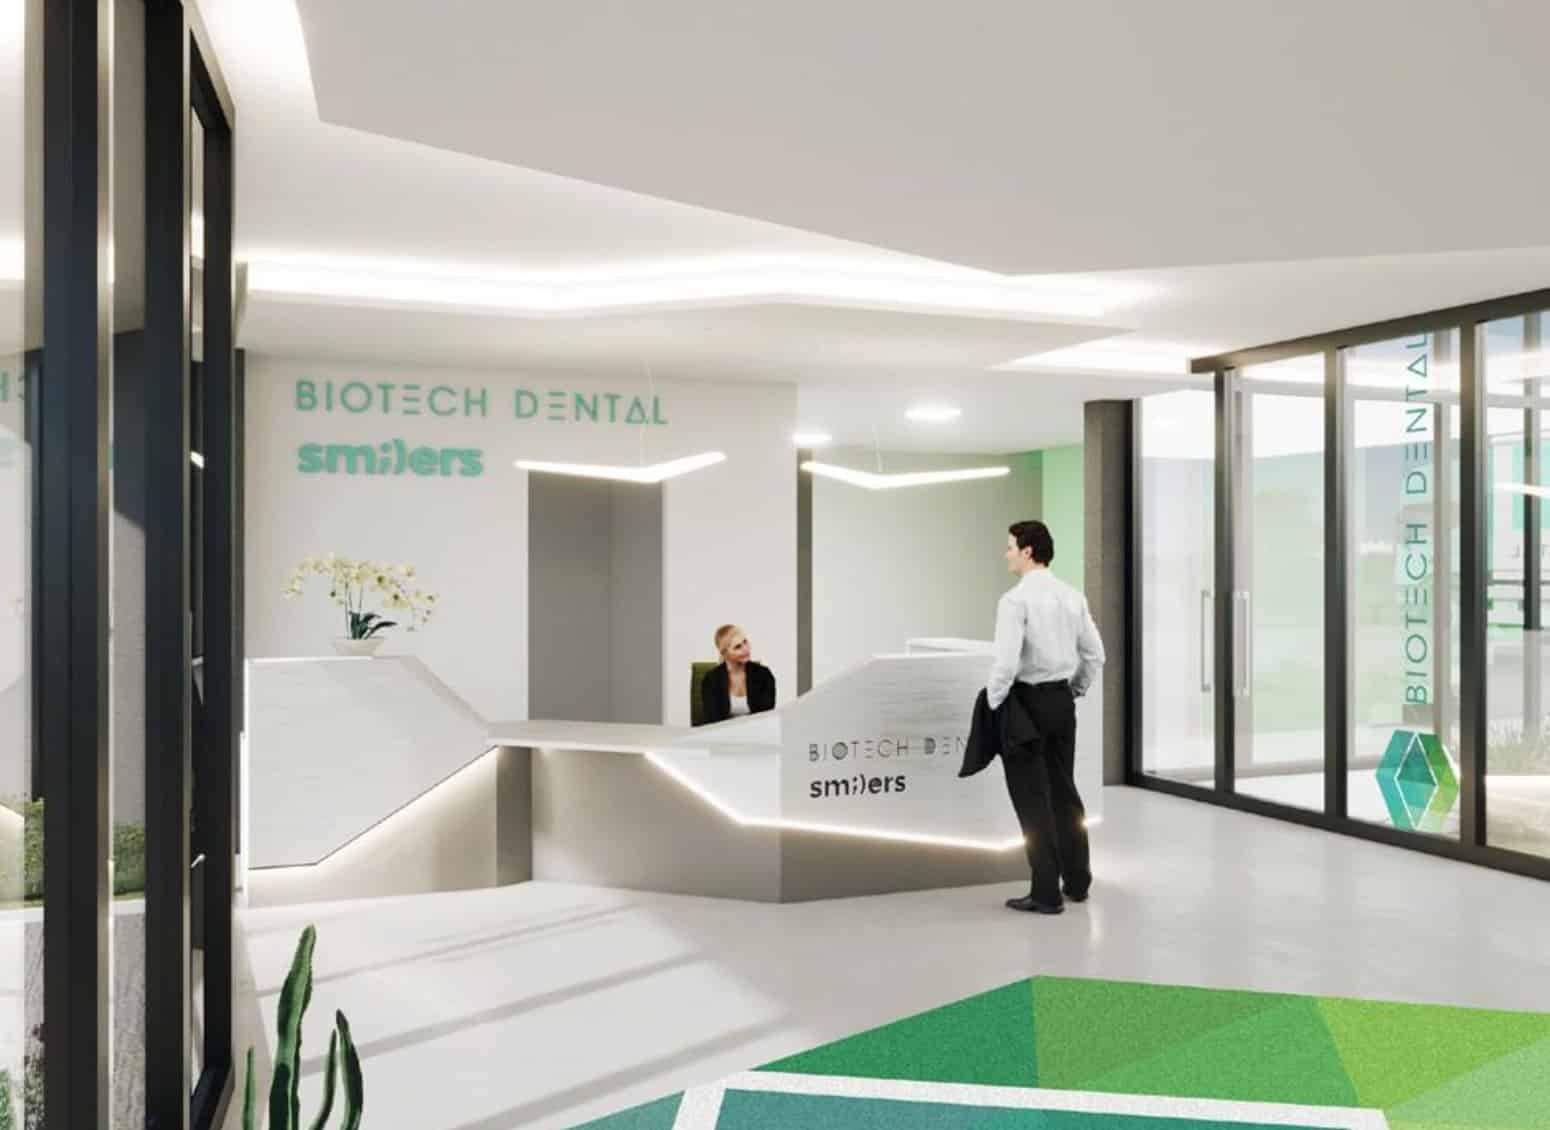 Biotech Dental, À Salon-de-Provence, Biotech Dental implante un centre dédié à l&rsquo;économie circulaire et l&rsquo;innovation, Made in Marseille